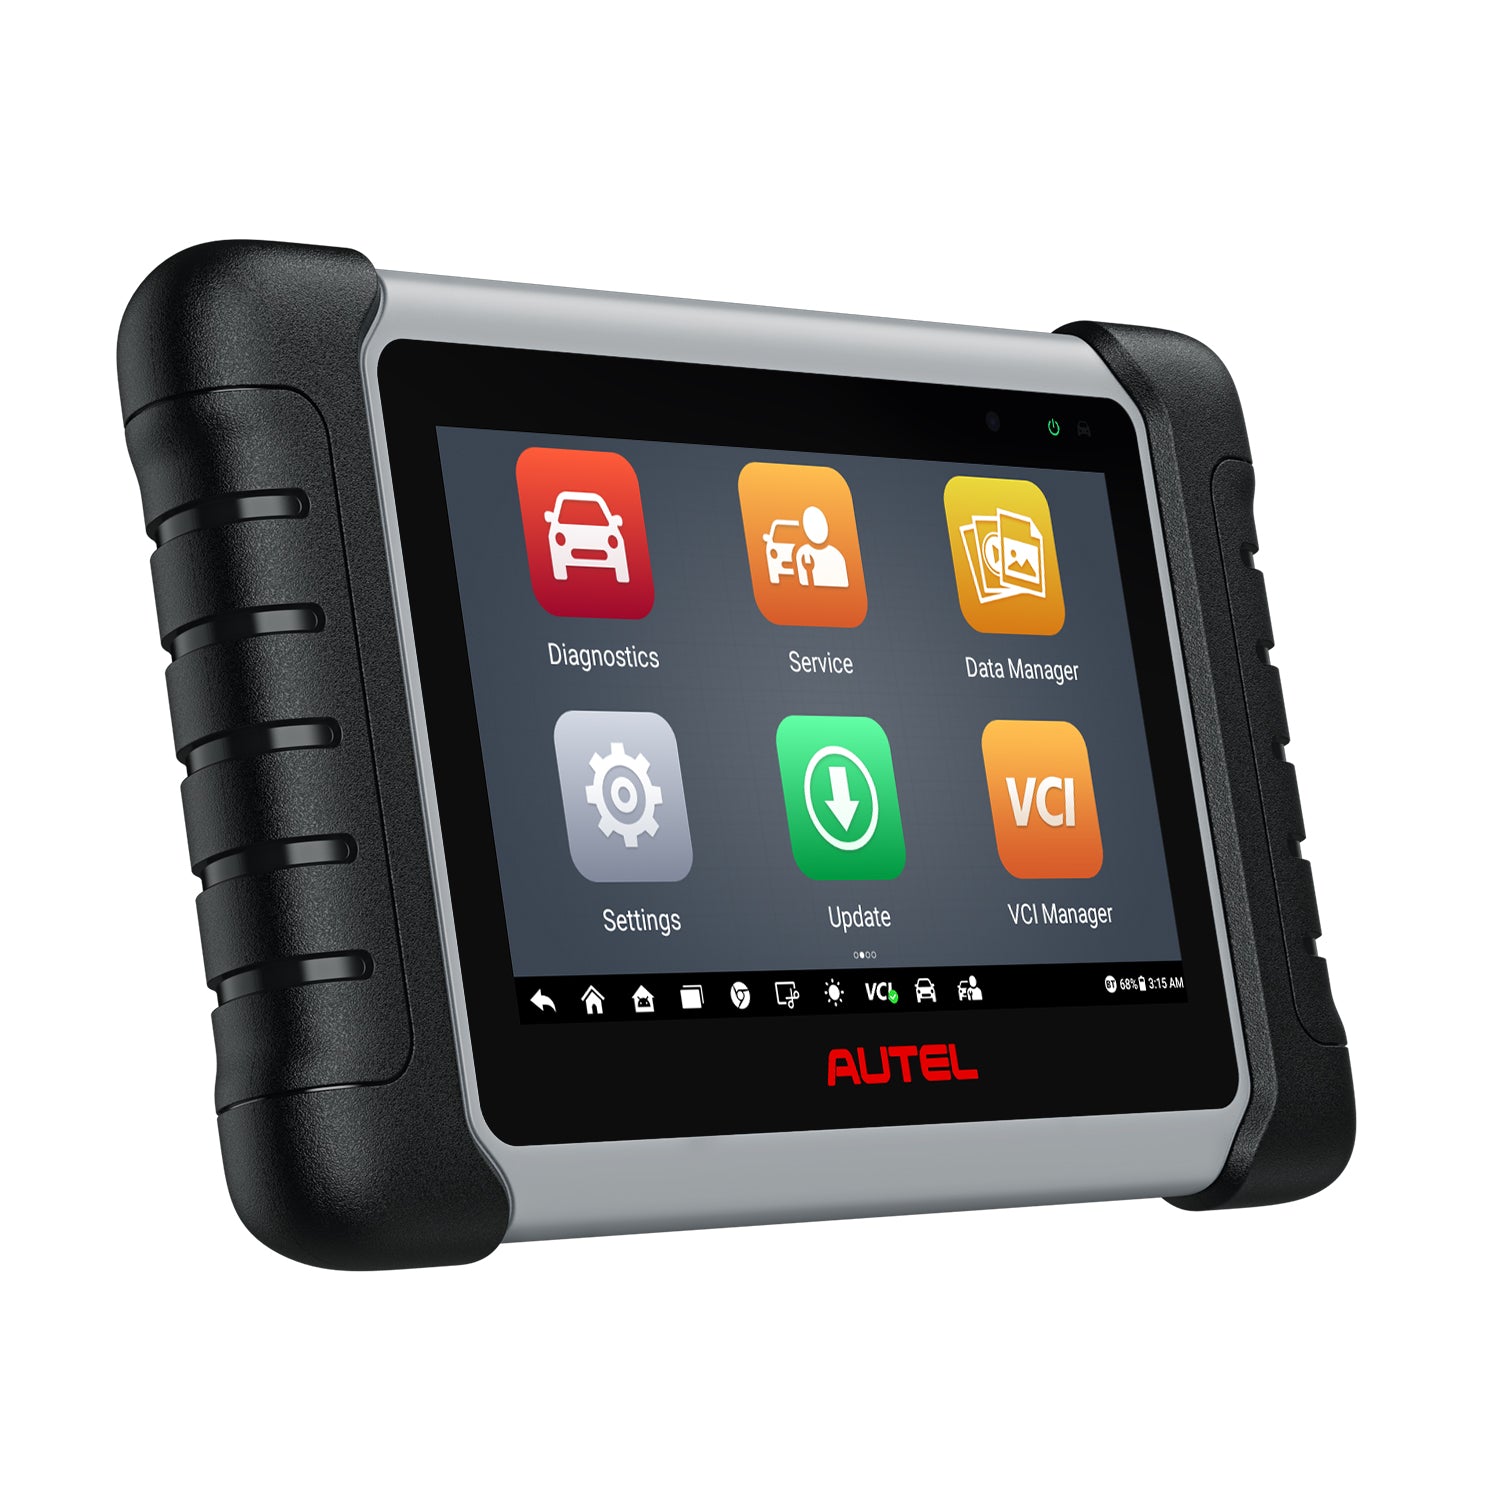 Touch Screen Digitizer Replacement For Autel MaxiCOM MK808BT PRO, Autel- MK808BT-Pro